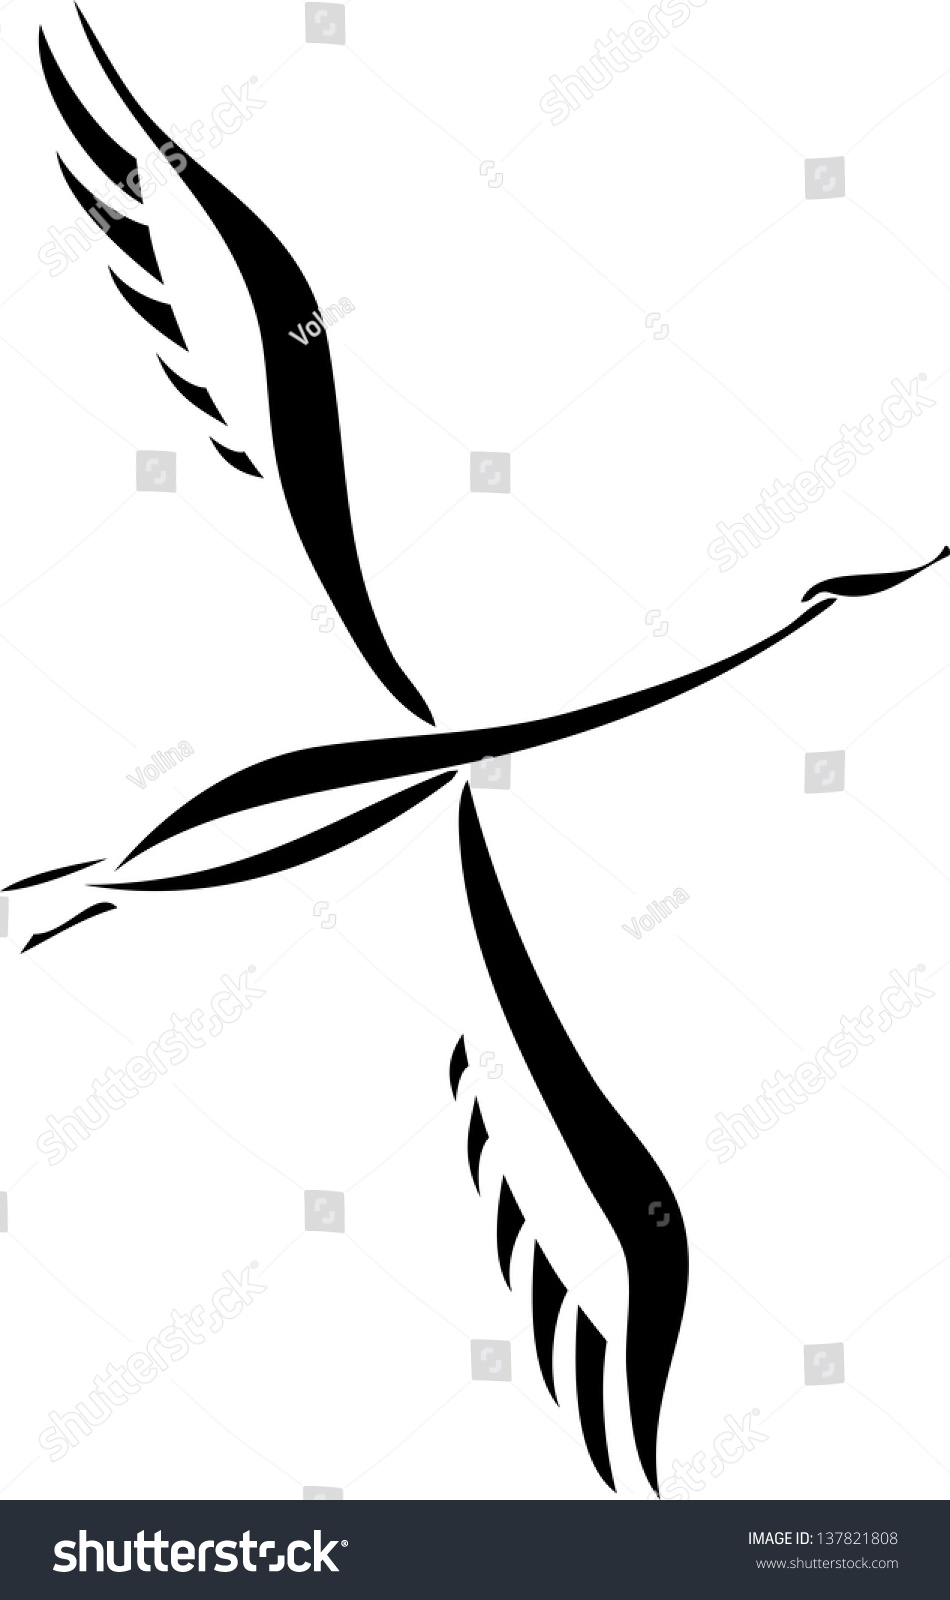 Silhouette Flying Swan Stock Illustration 137821808 | Shutterstock